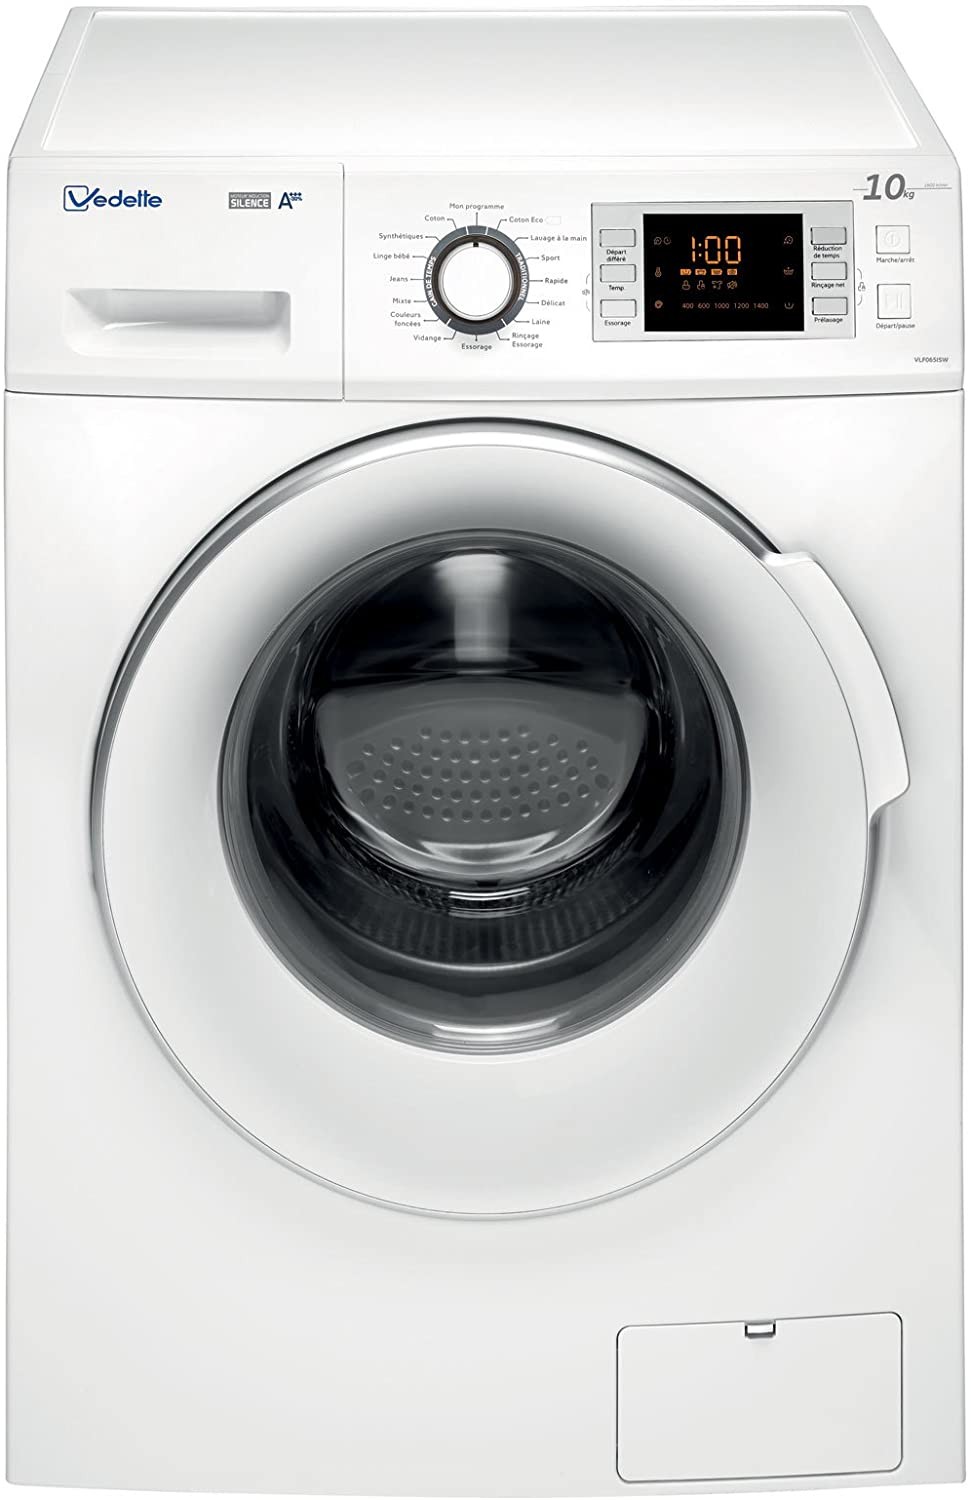 Combi Machine à laver de tapis 2 en 1 (lavage+essorage) - Mariem  Equipements Industriels